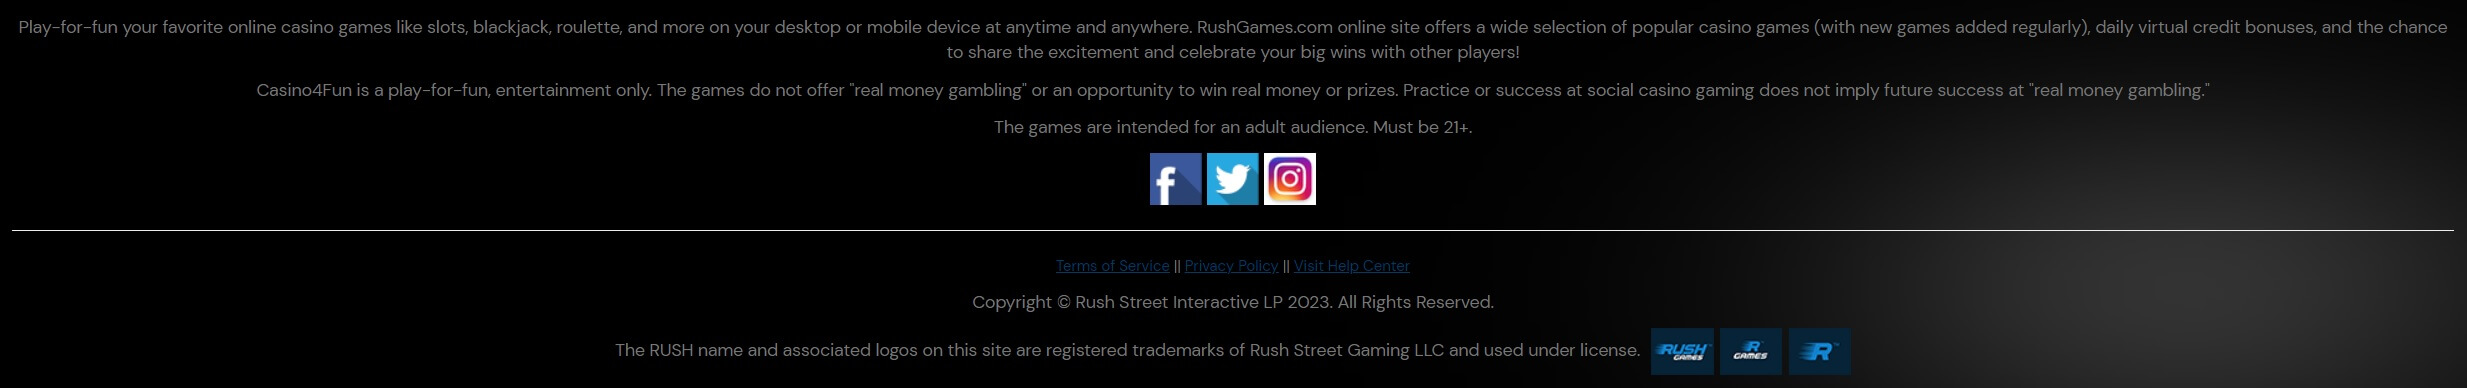 Rush Games Responsible Gaming